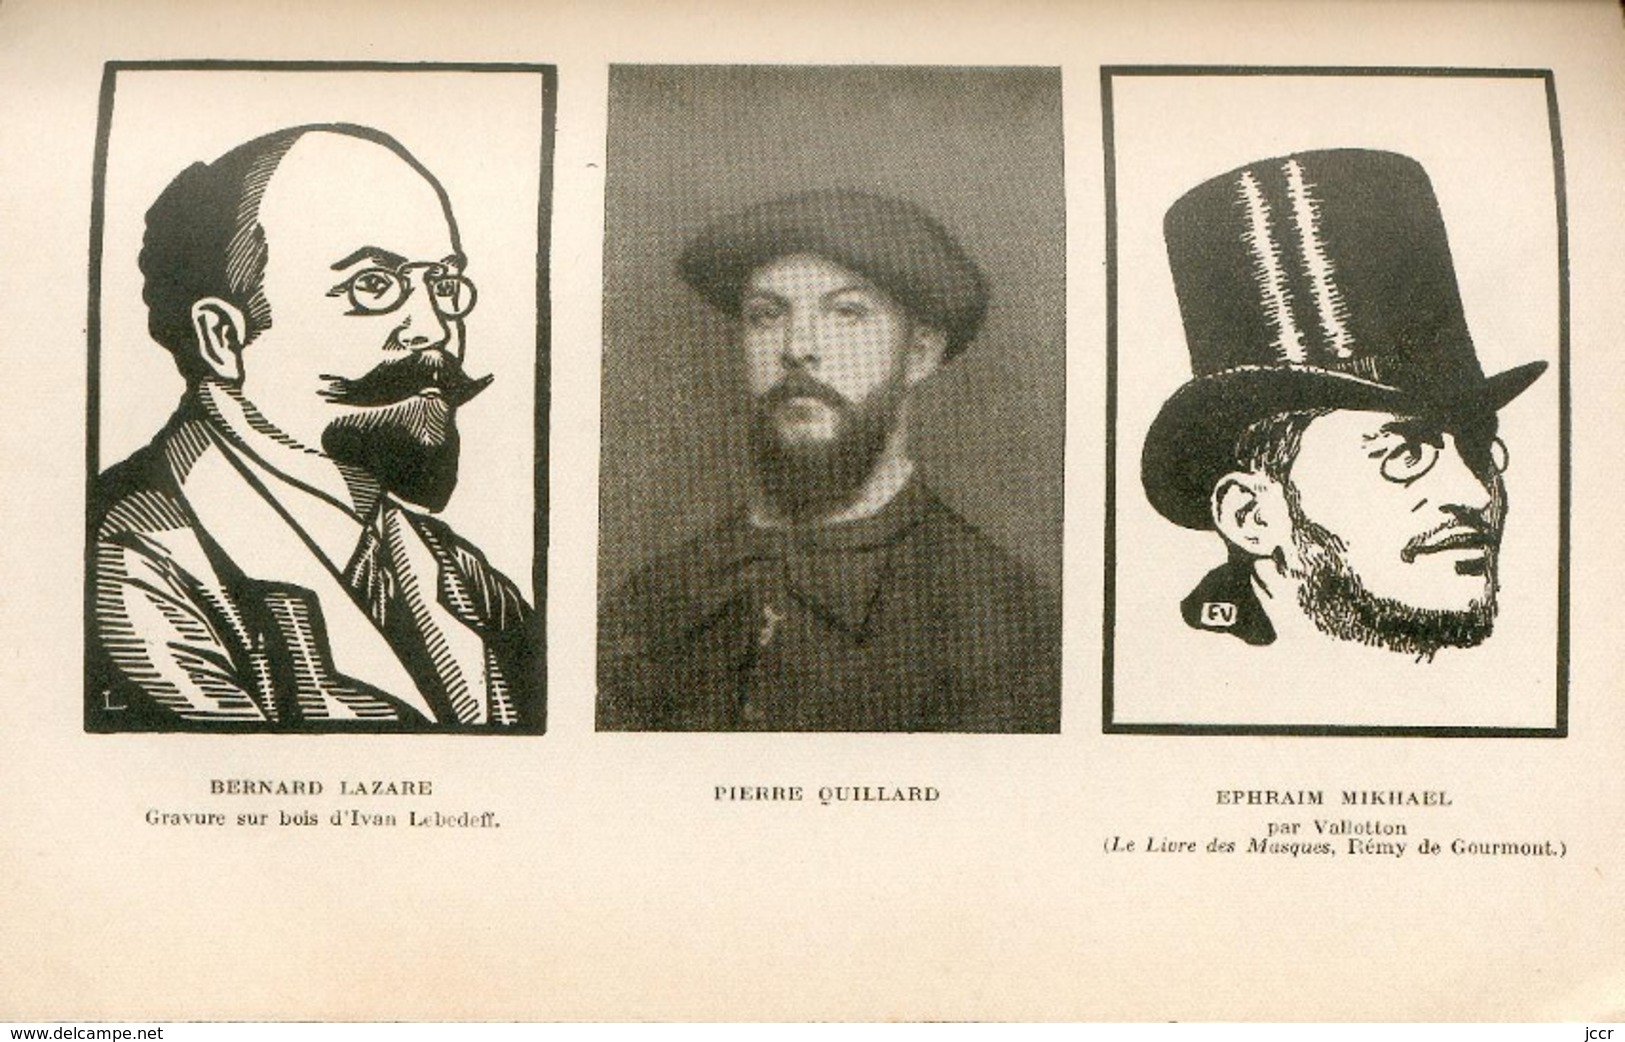 Jean Ajalbert - Mémoires en vrac. Au temps du Symbolisme 1880-1890 - EO avec envoi signé de l'auteur - 1938